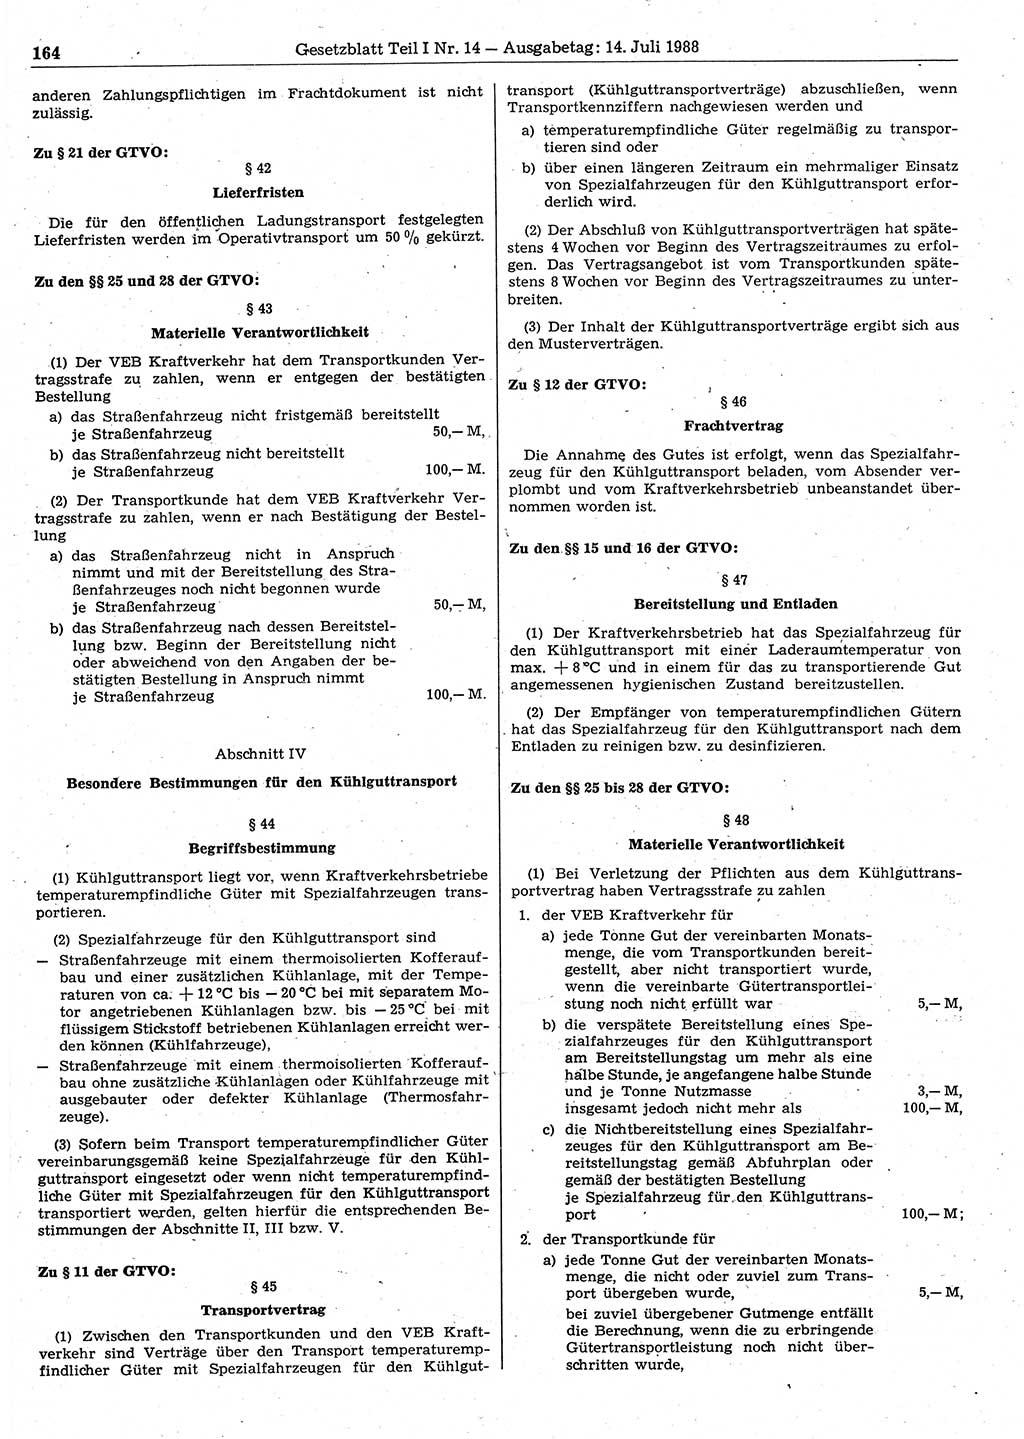 Gesetzblatt (GBl.) der Deutschen Demokratischen Republik (DDR) Teil Ⅰ 1988, Seite 164 (GBl. DDR Ⅰ 1988, S. 164)